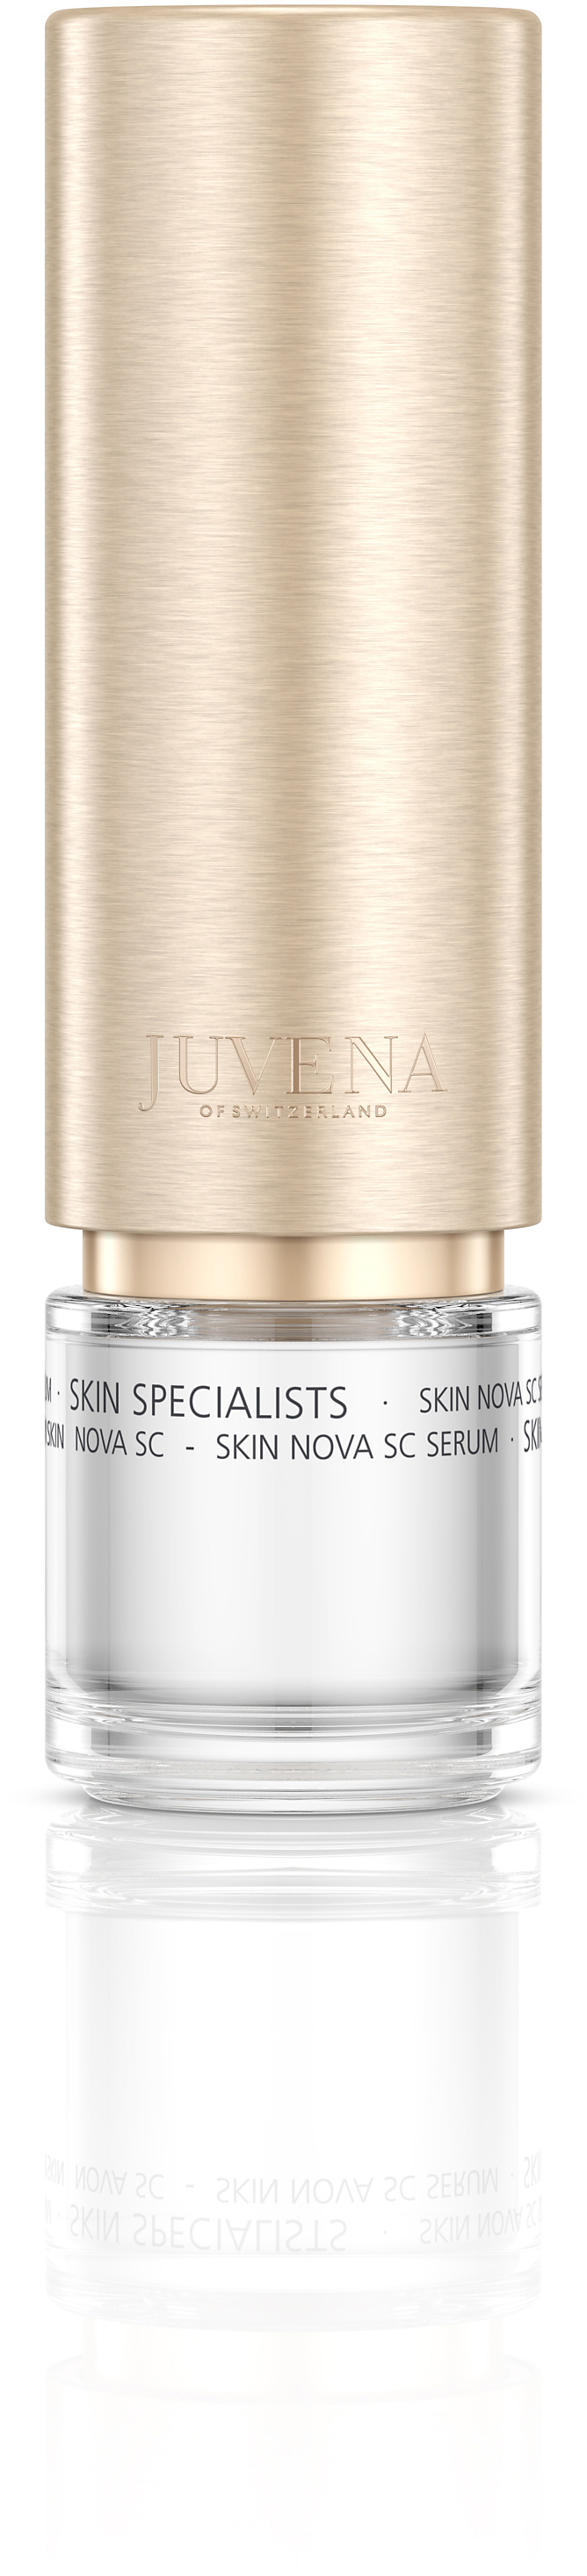 Juvena Specialists Skin Nova Sc Serum 30 ml